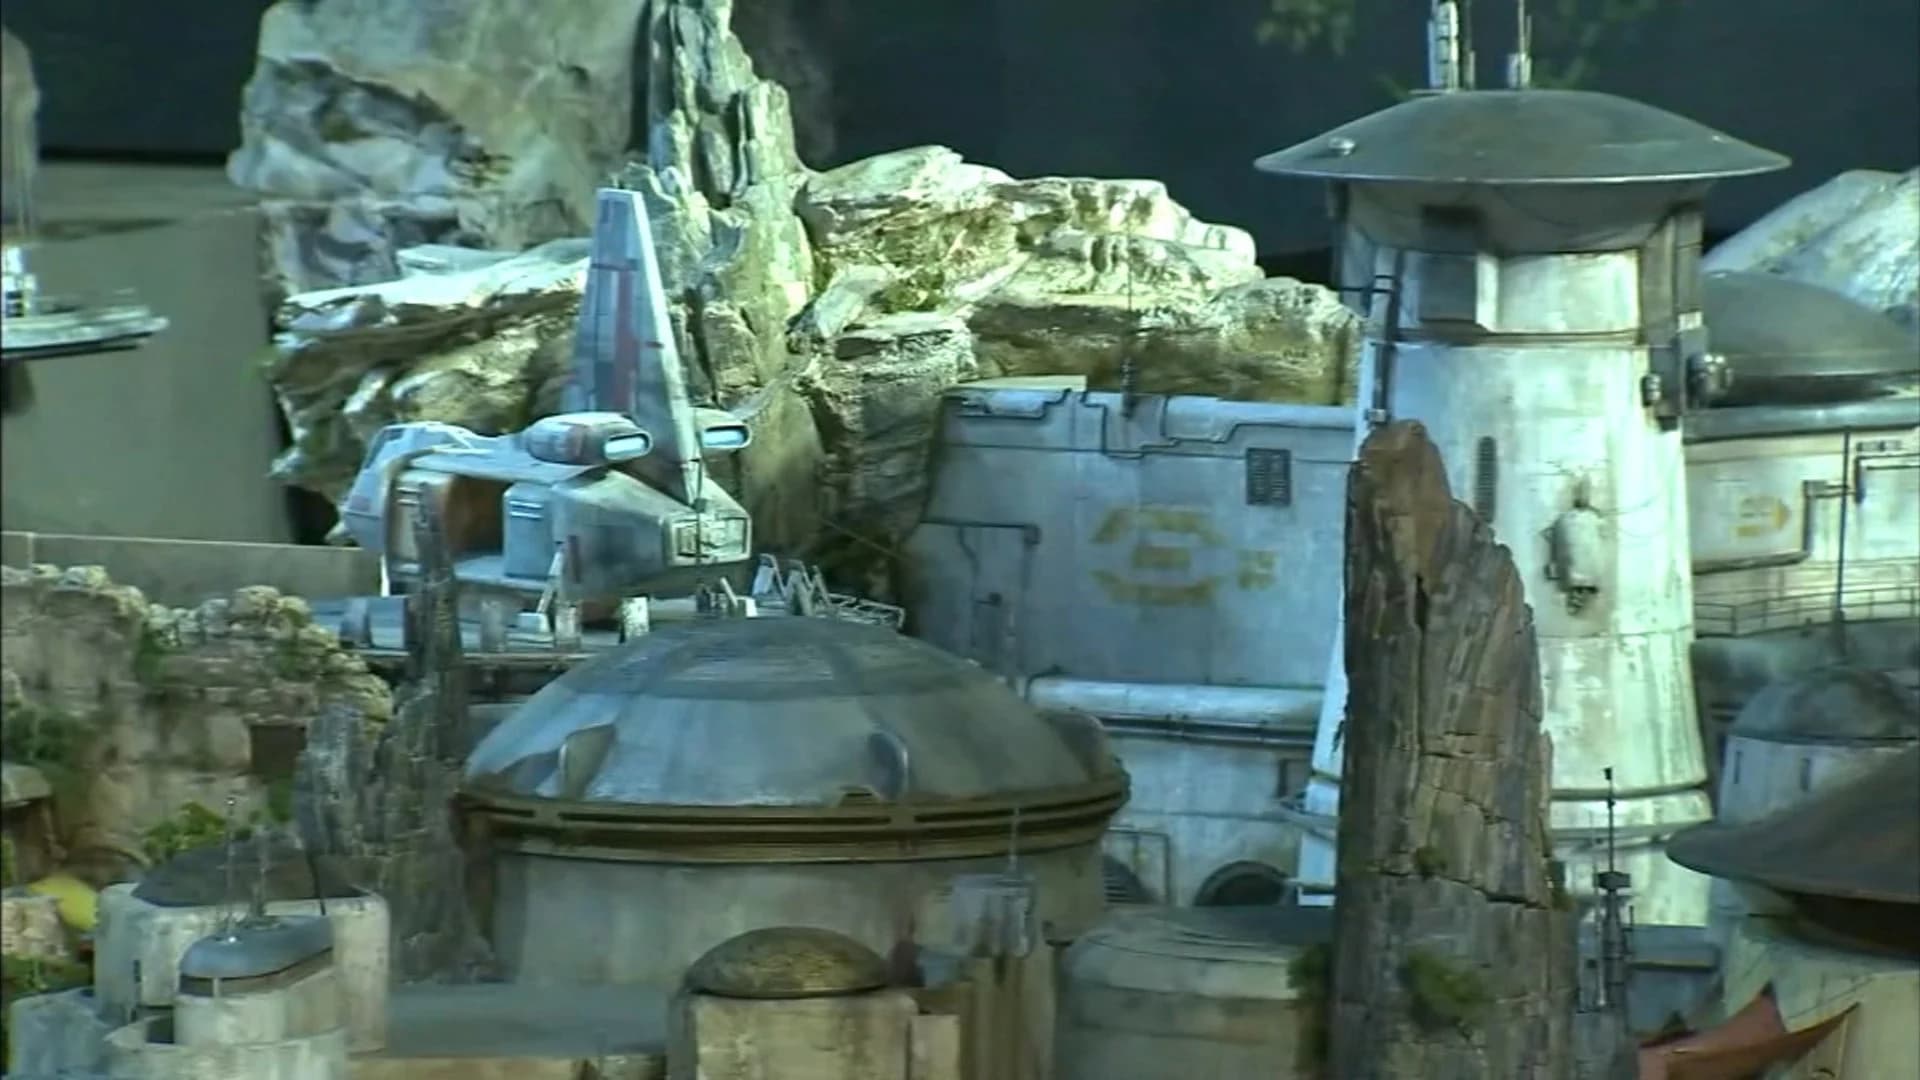 Disney reveals models of planned Star Wars lands